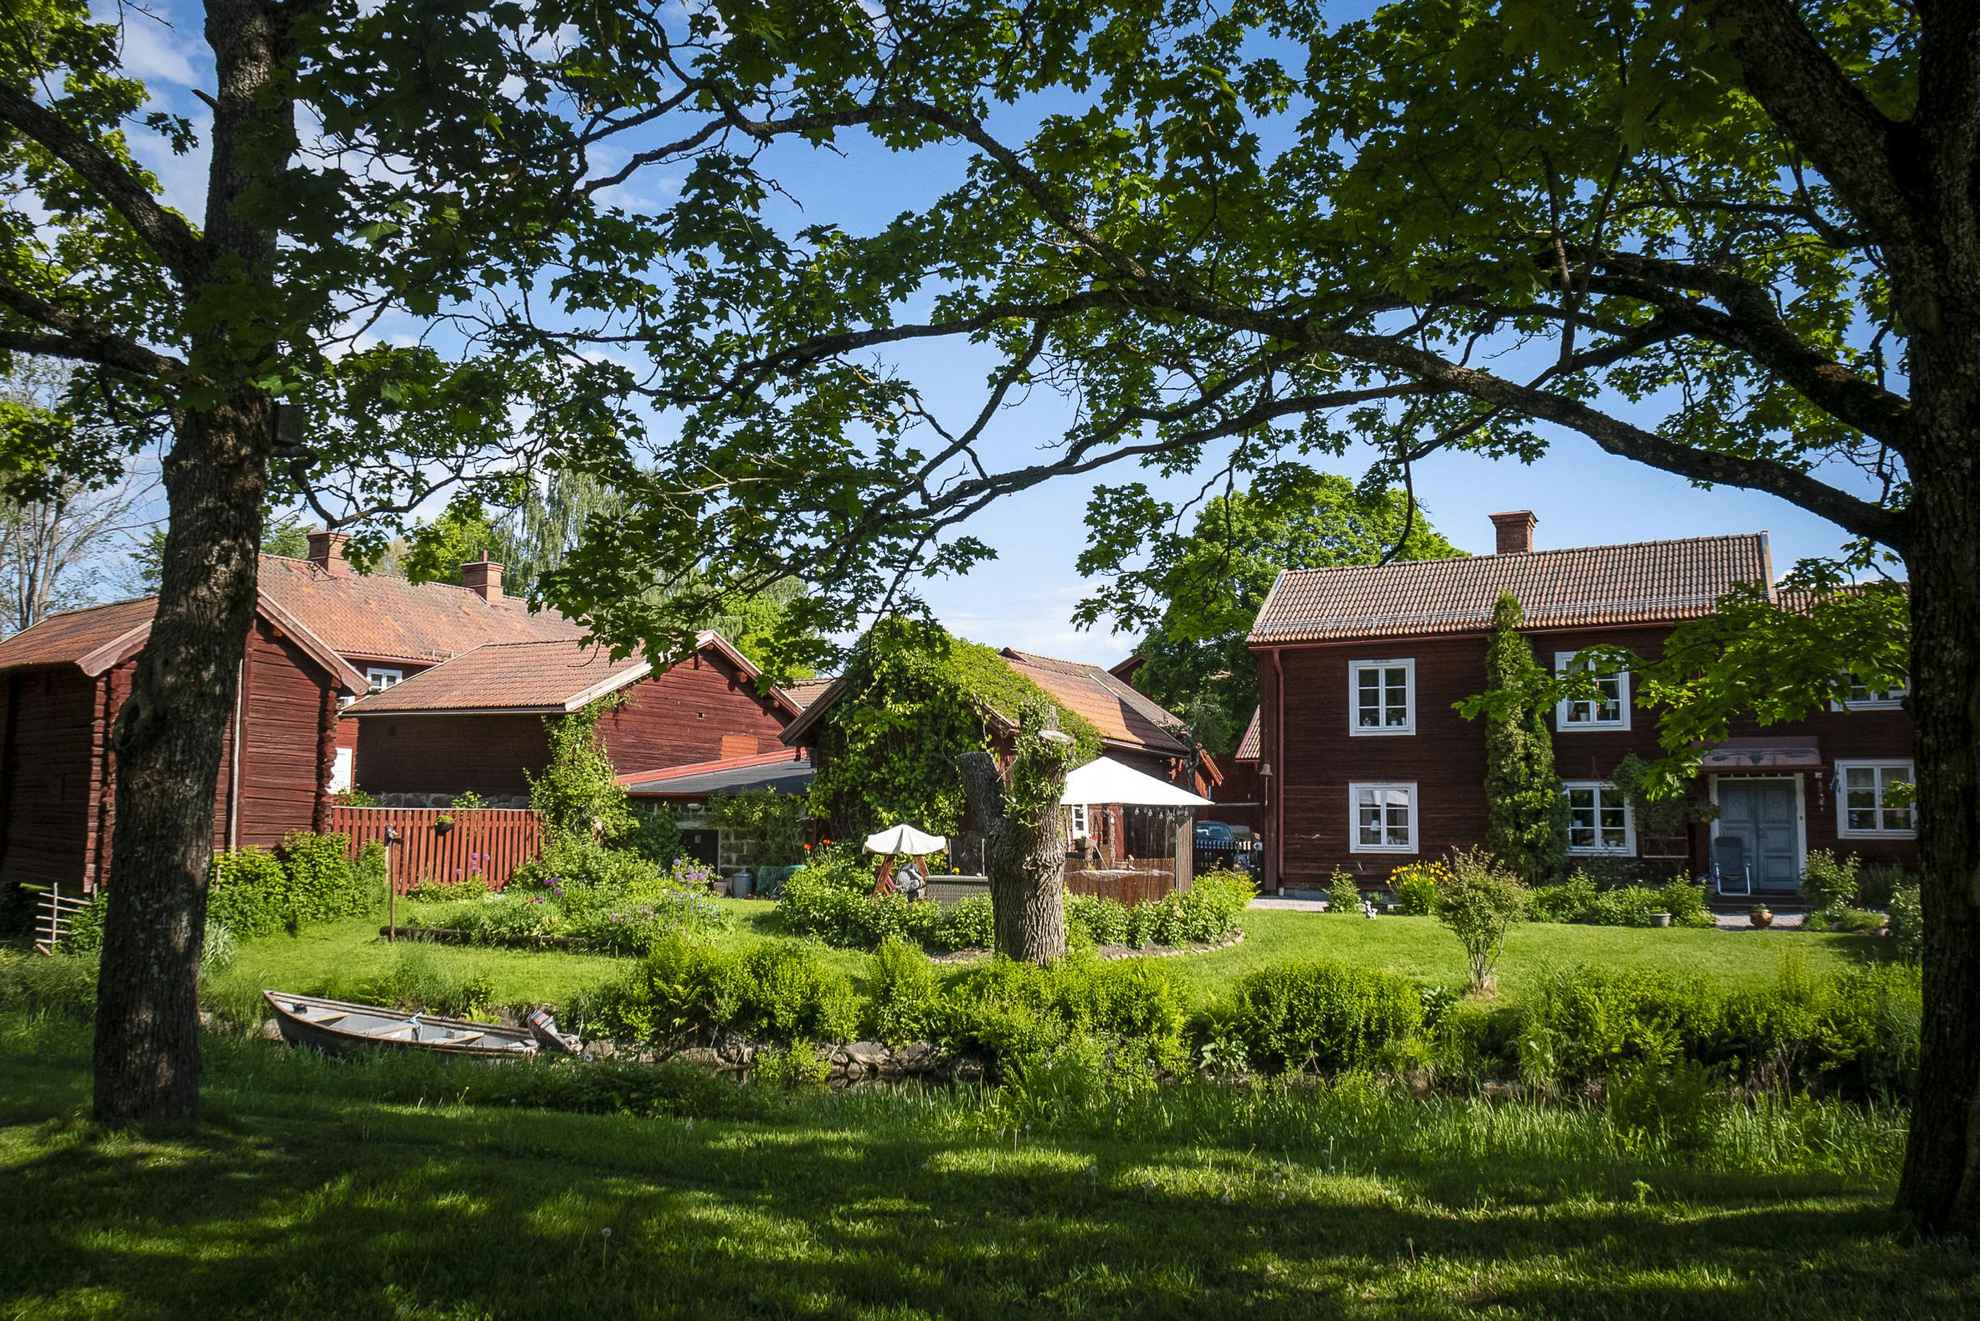 Schwedische Häuser in Falunrot an einem Sommertag in Falun. Die rotgestrichenen Häuser sind von grünen Bäumen umgeben.